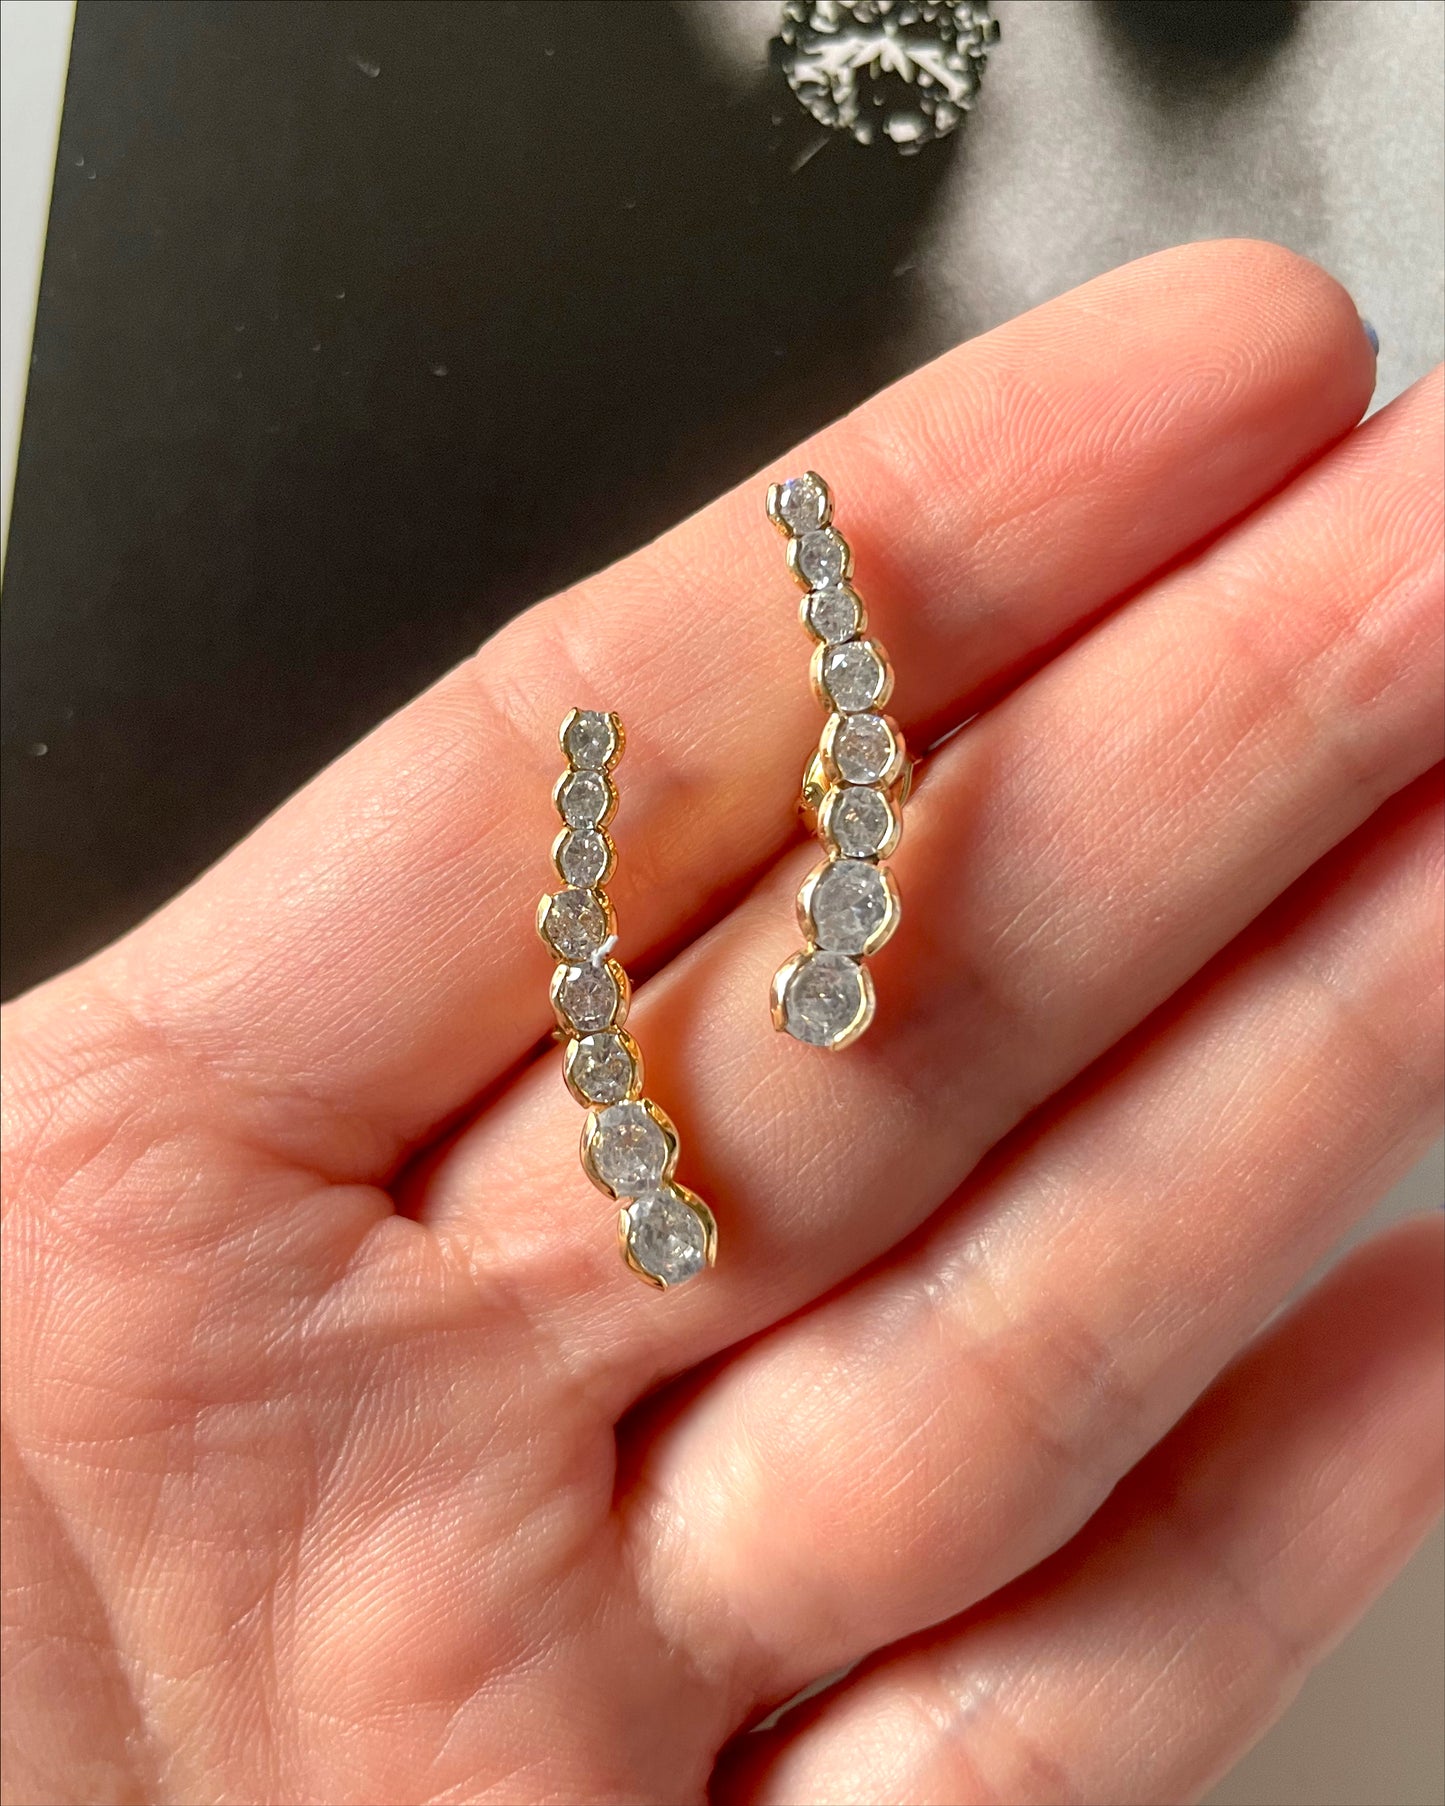 Clear gemstones line earrings